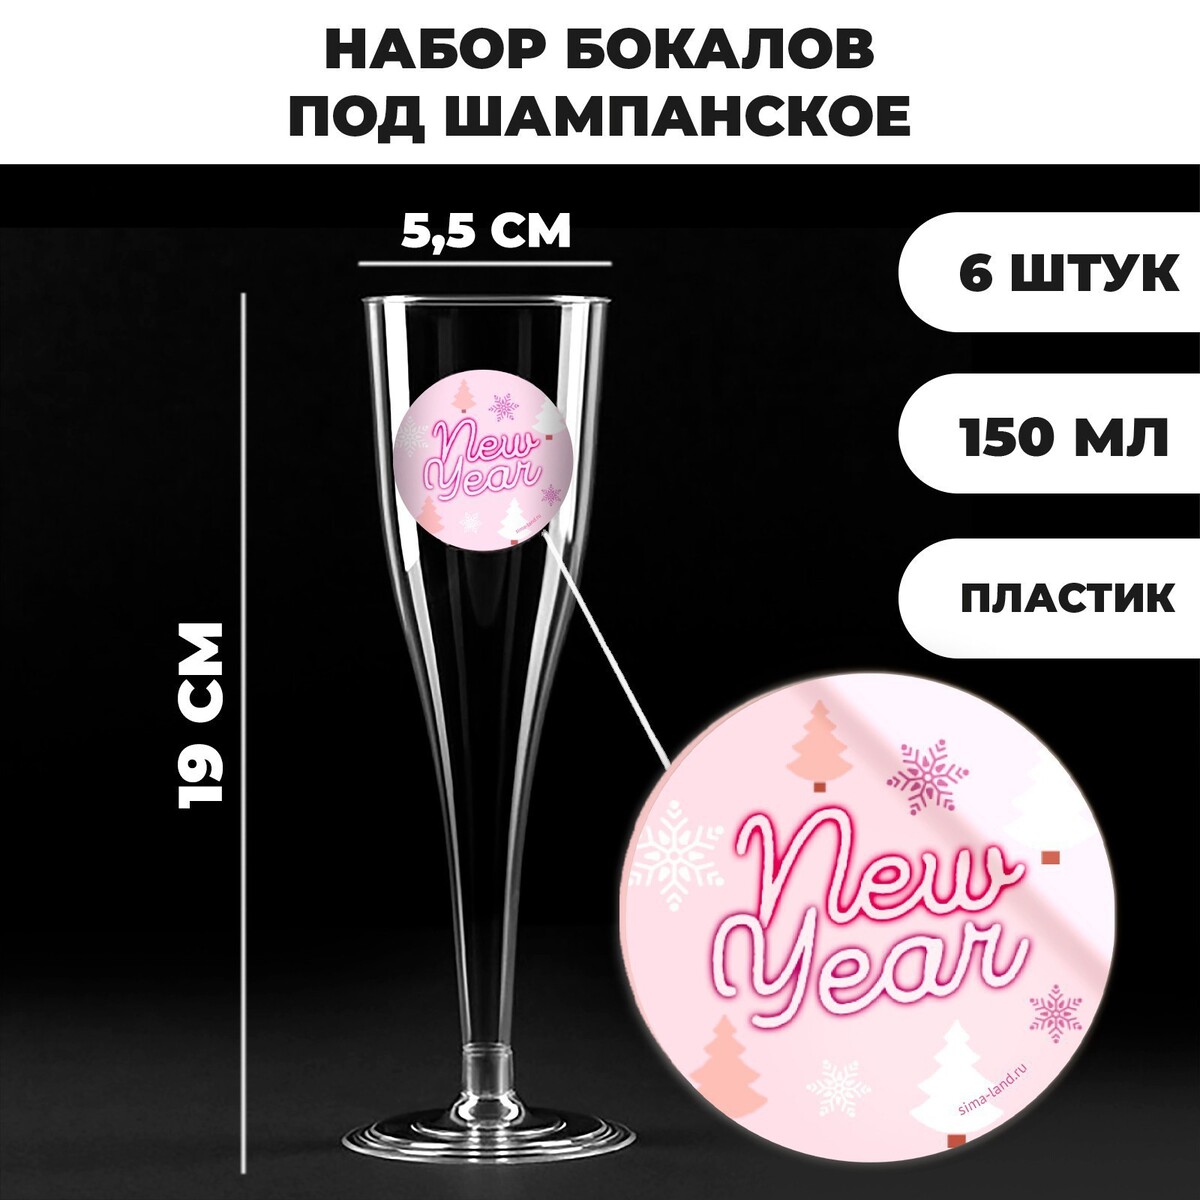 Новогодний набор пластиковых бокалов под шампанское happy new year,150 мл, на новый год happy new year gift goodbye 2020